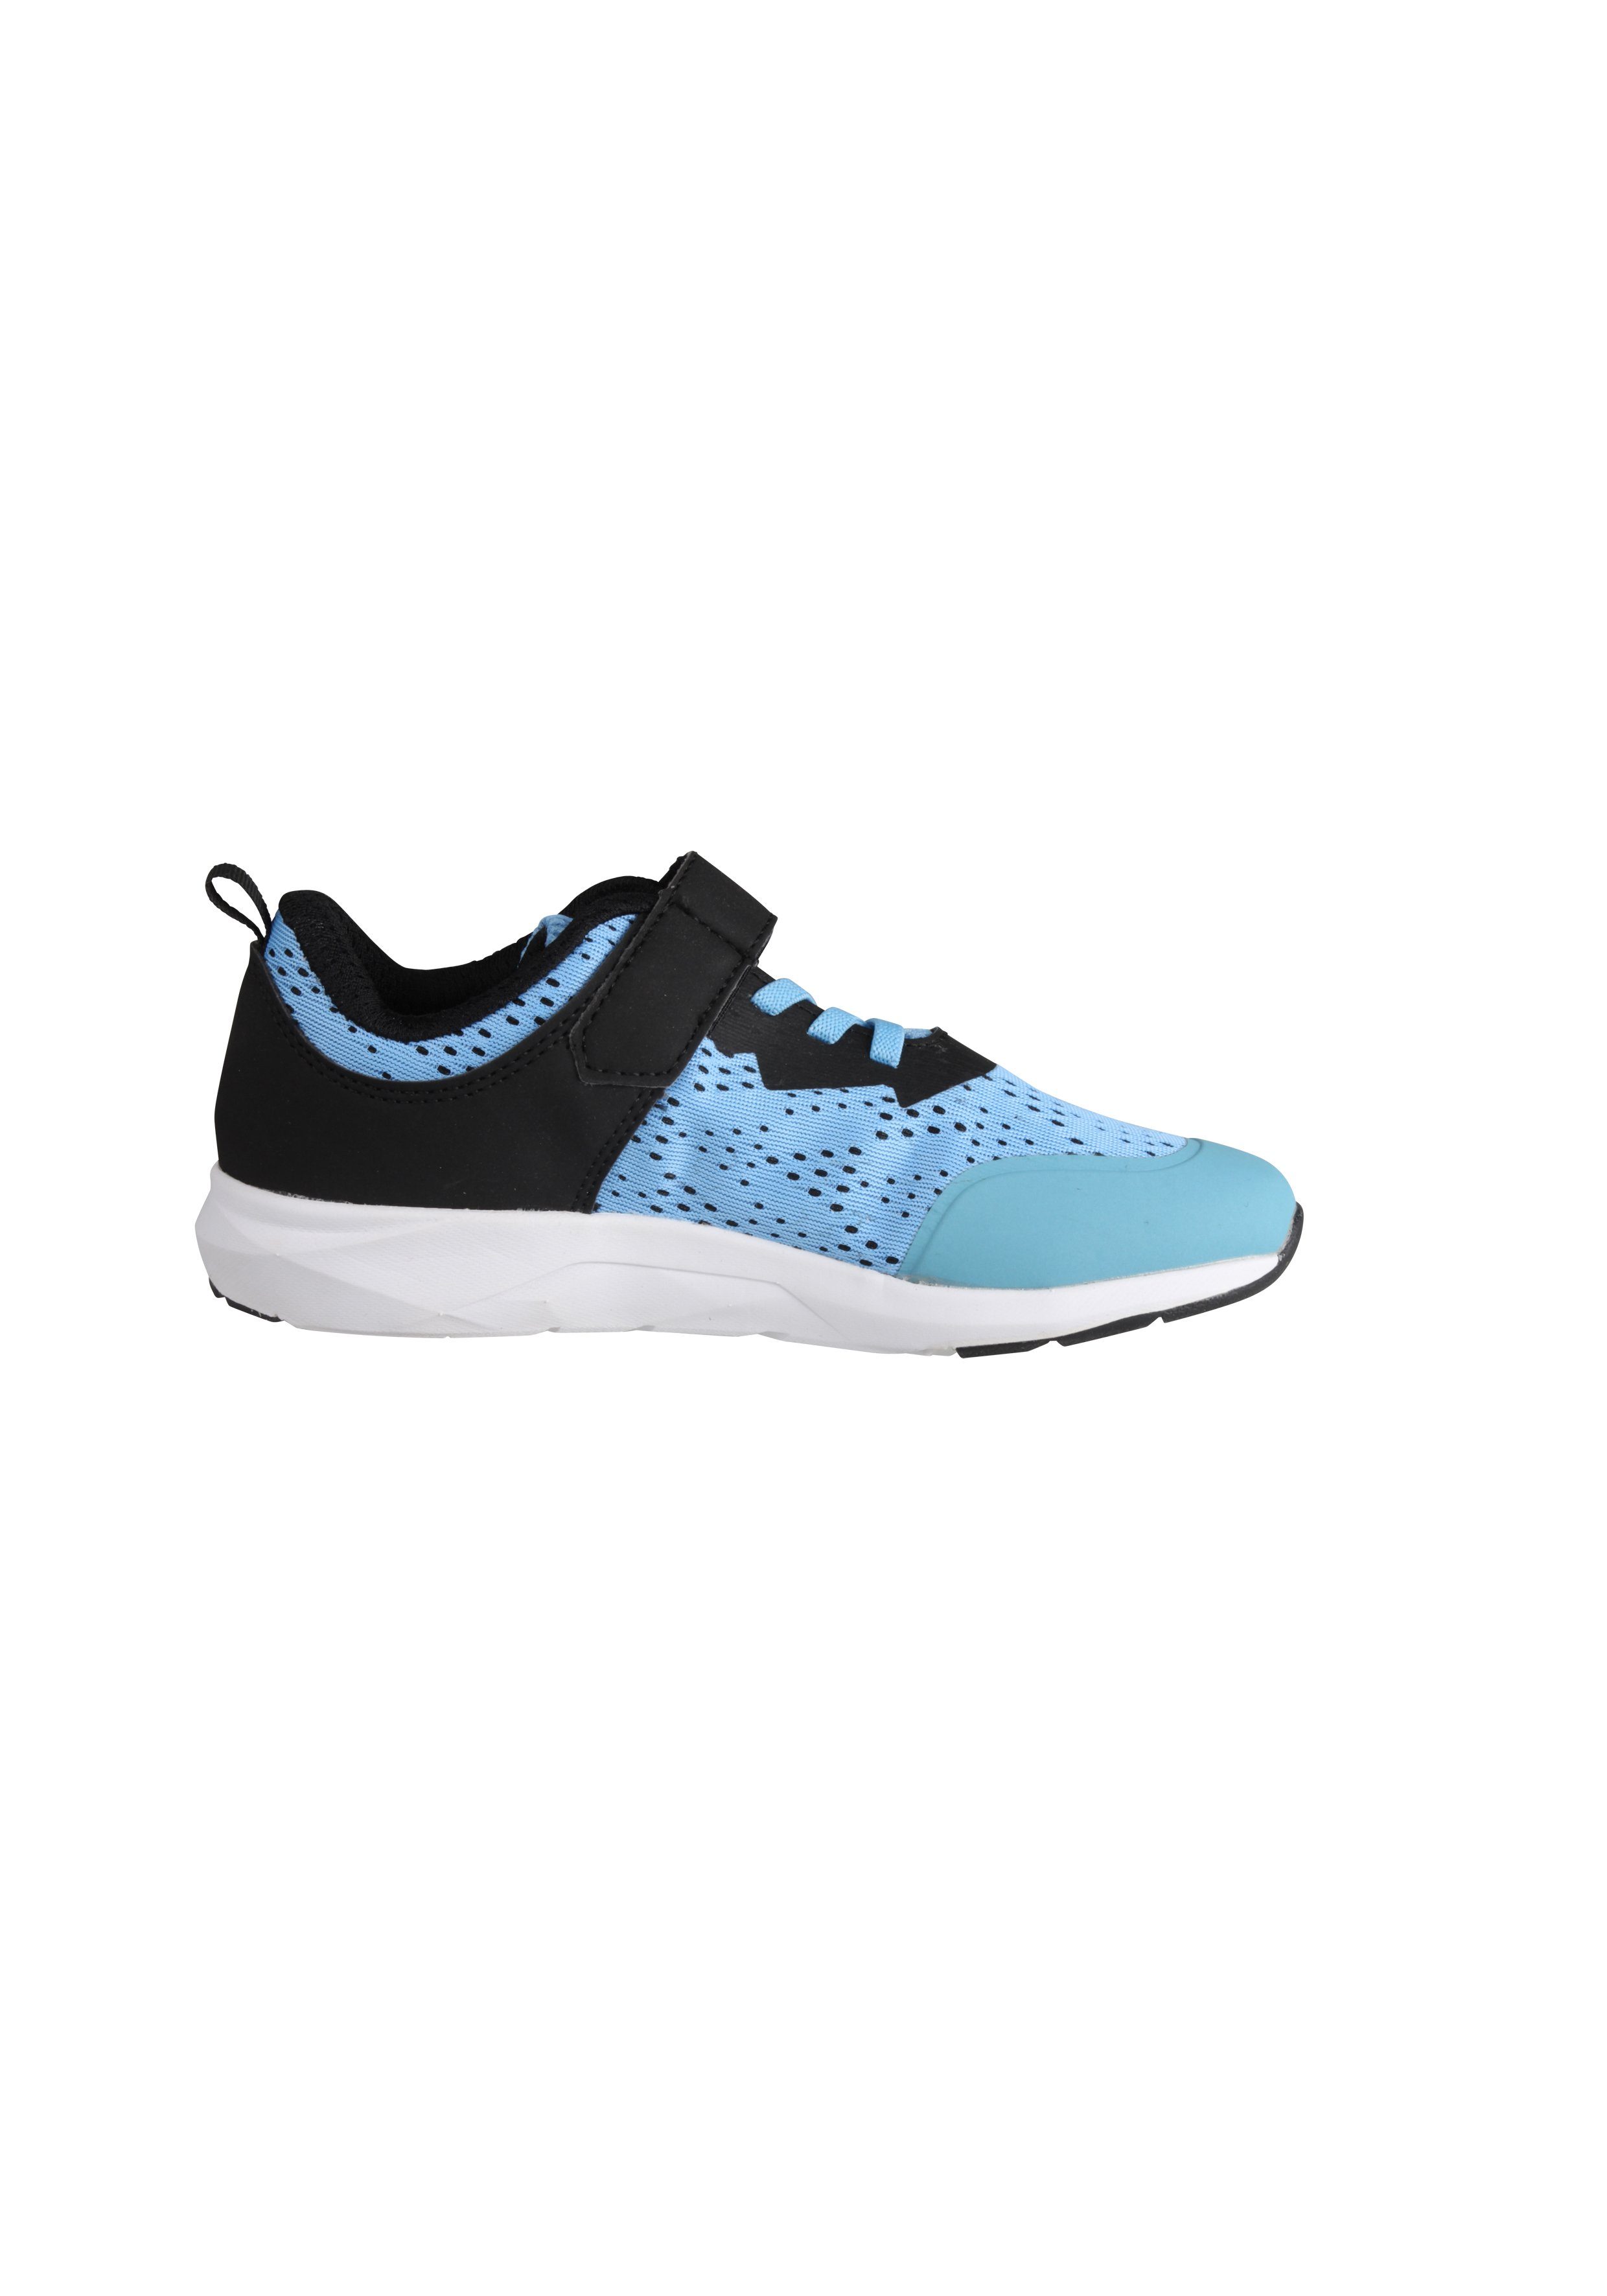 blau-schwarz Sports mit Alpina Ferse Fun Sneaker verstärkter